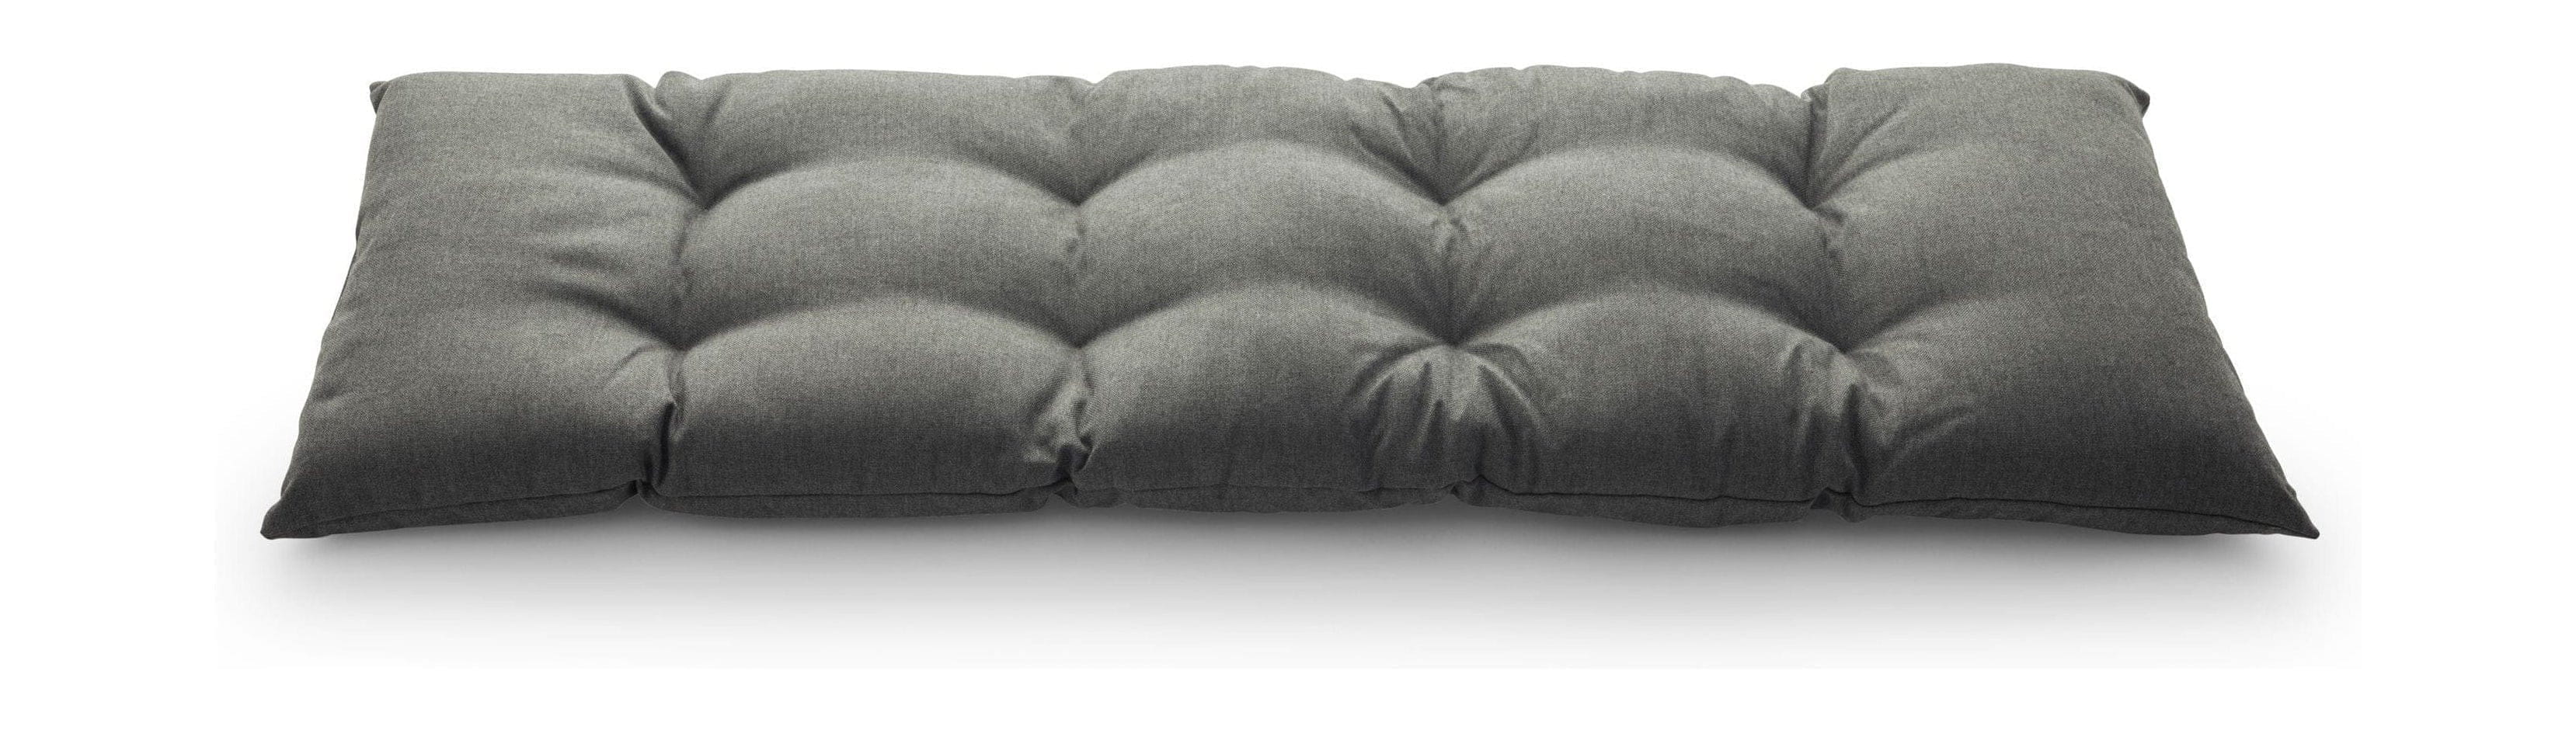 Skagerak Barrier Seat Cushion 125x43 cm, kol